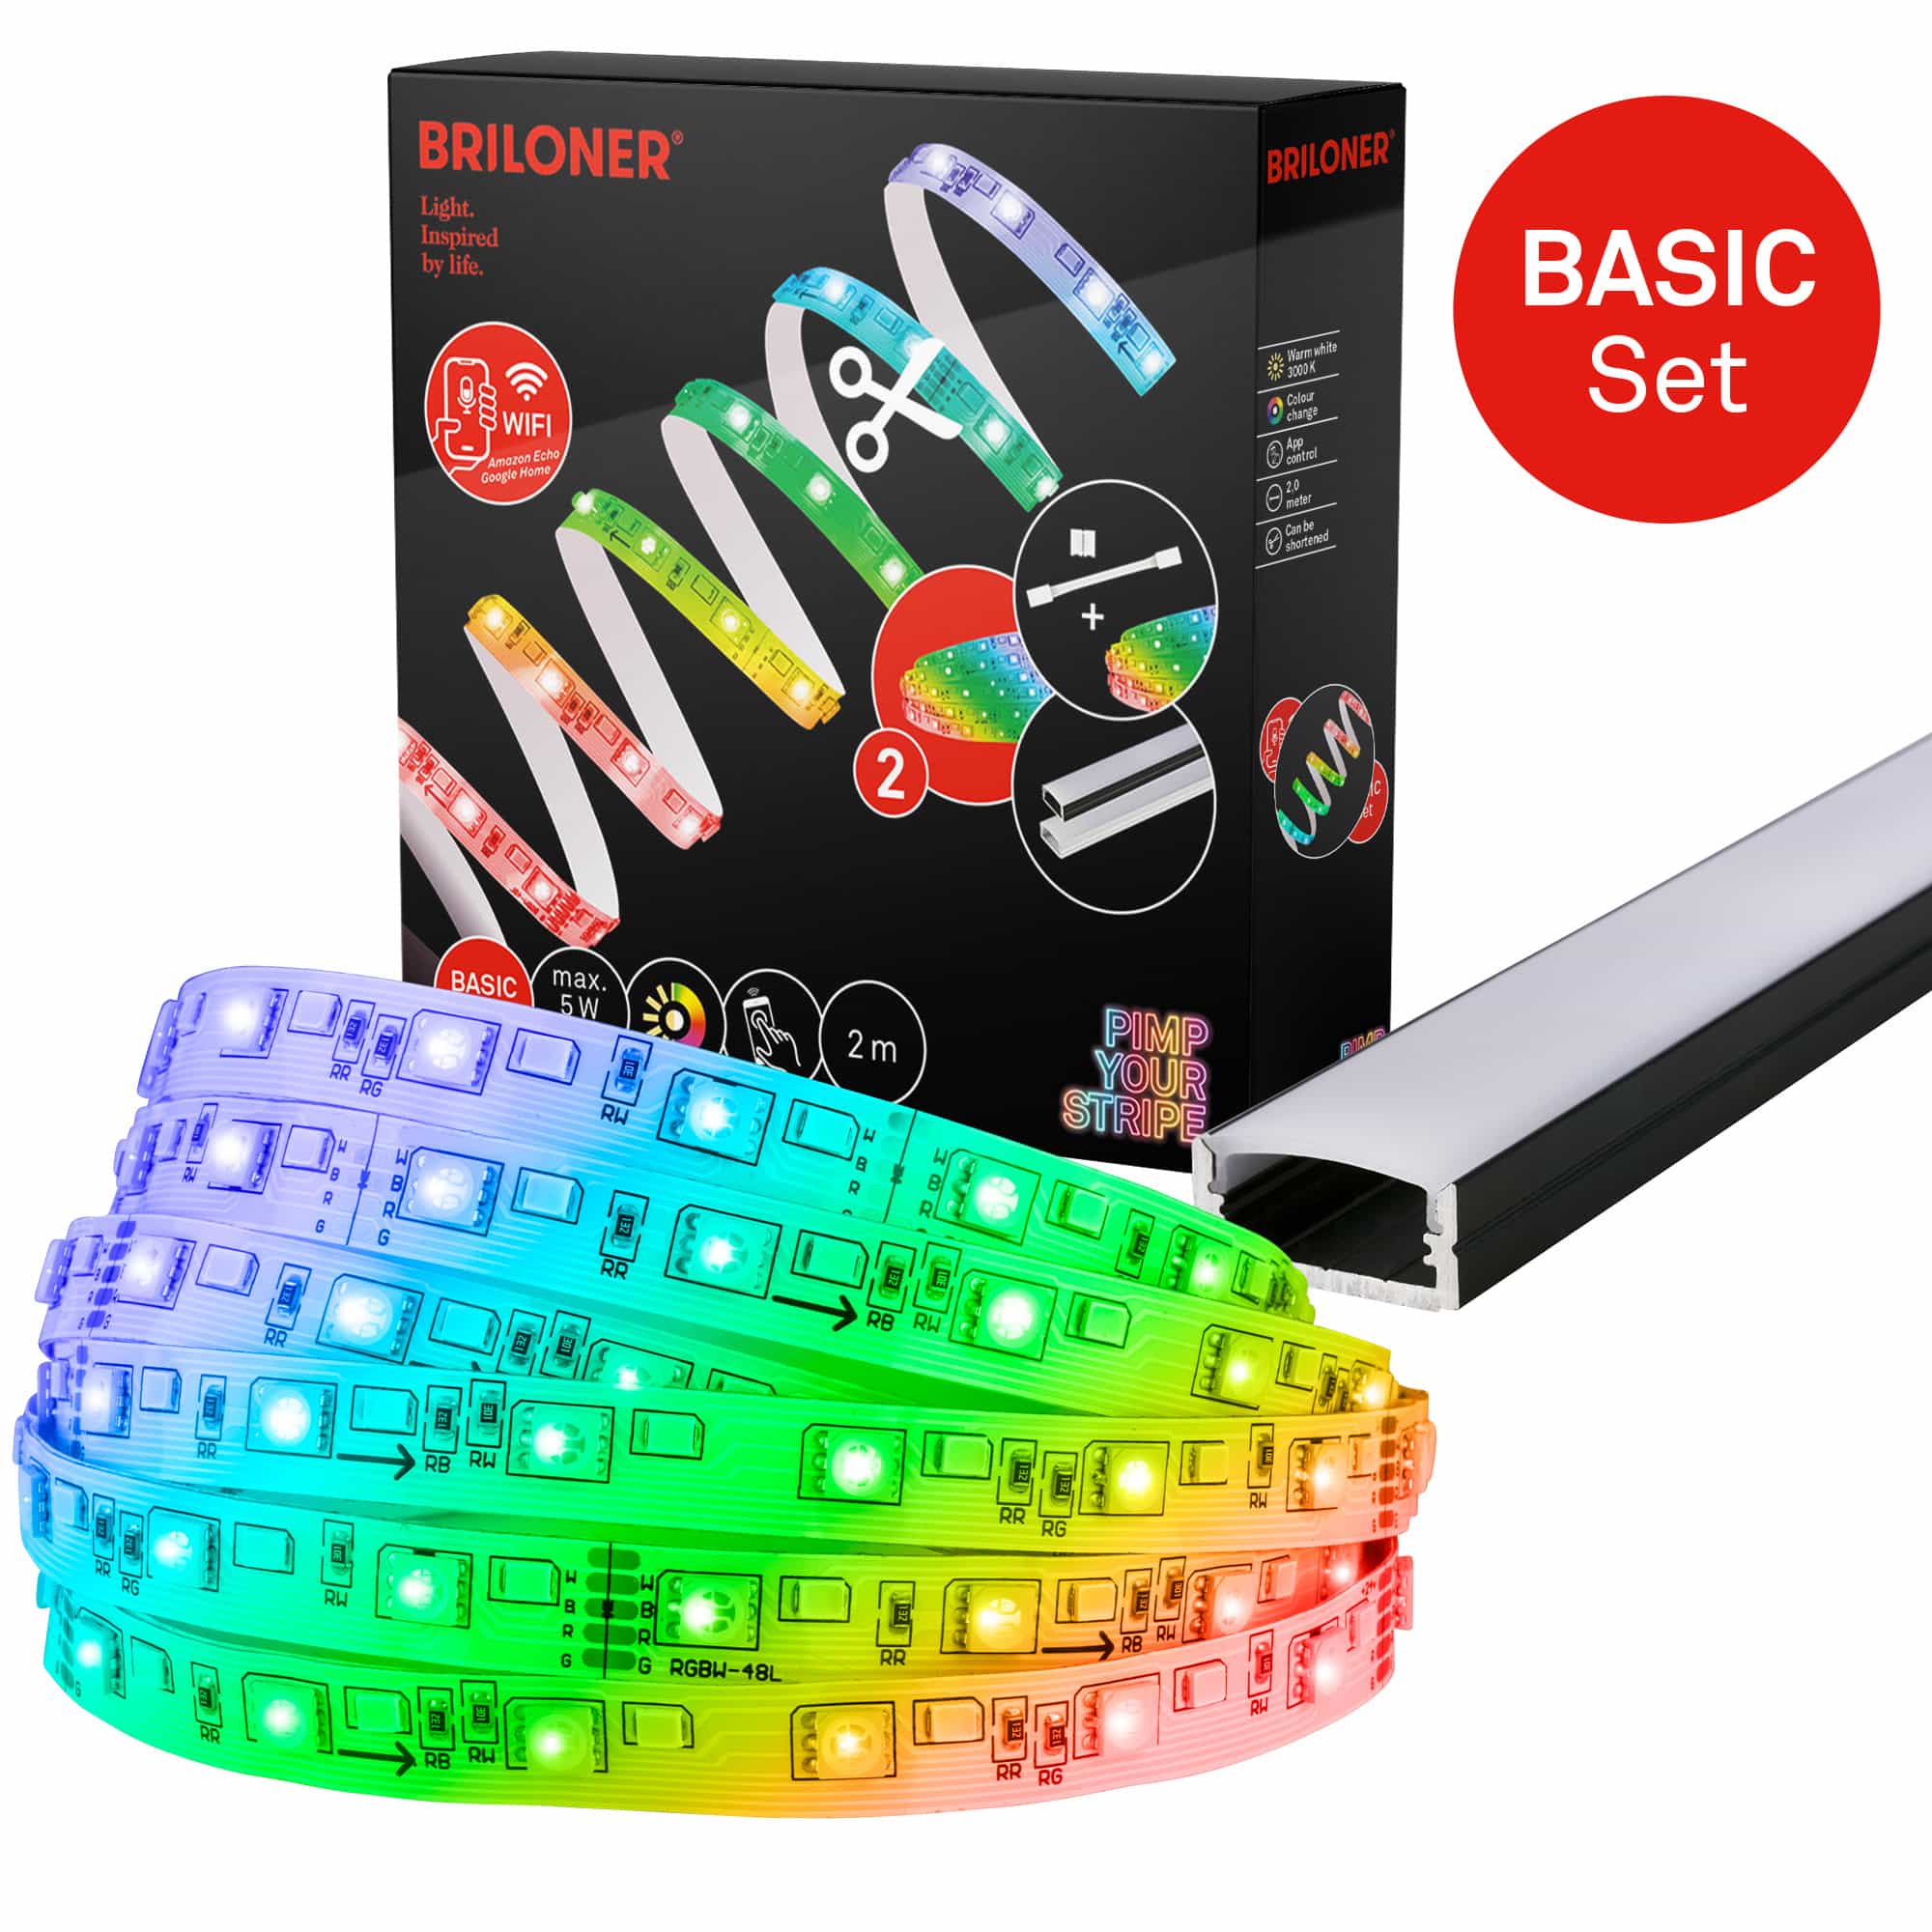 Pimp Your Stripe Starterset LED Strip 2m, WiFi, RGB+W